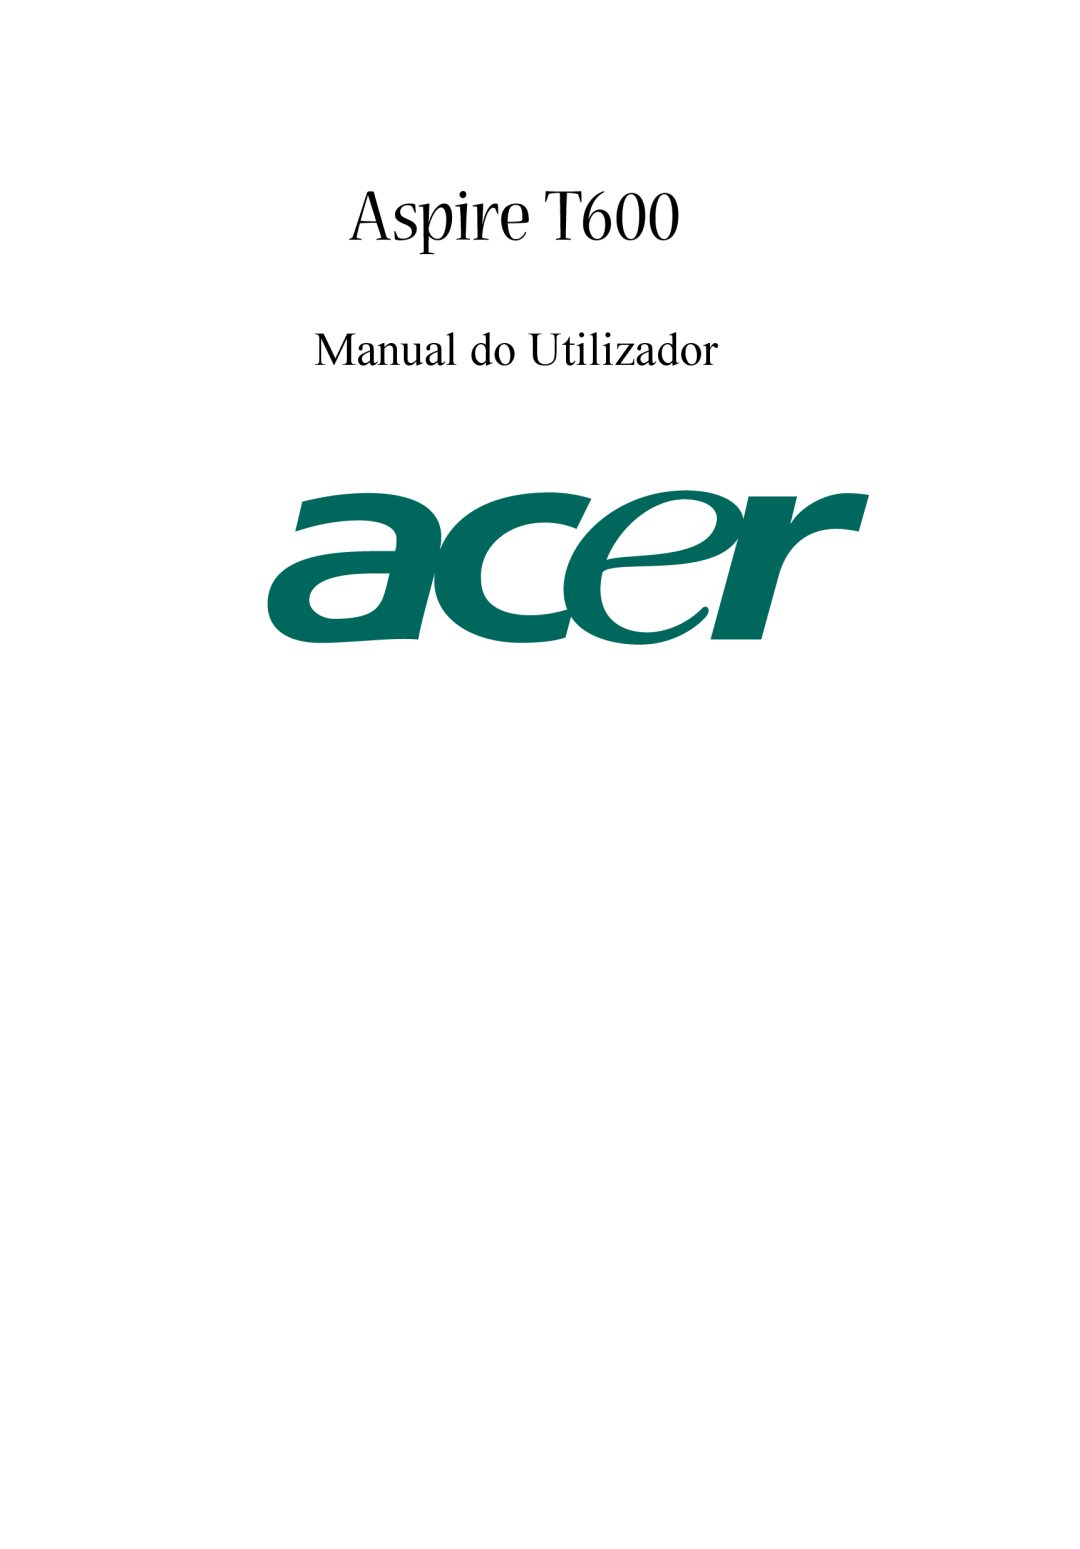 Acer manual do utilizador Manual do Utilizador, Aspire T600 